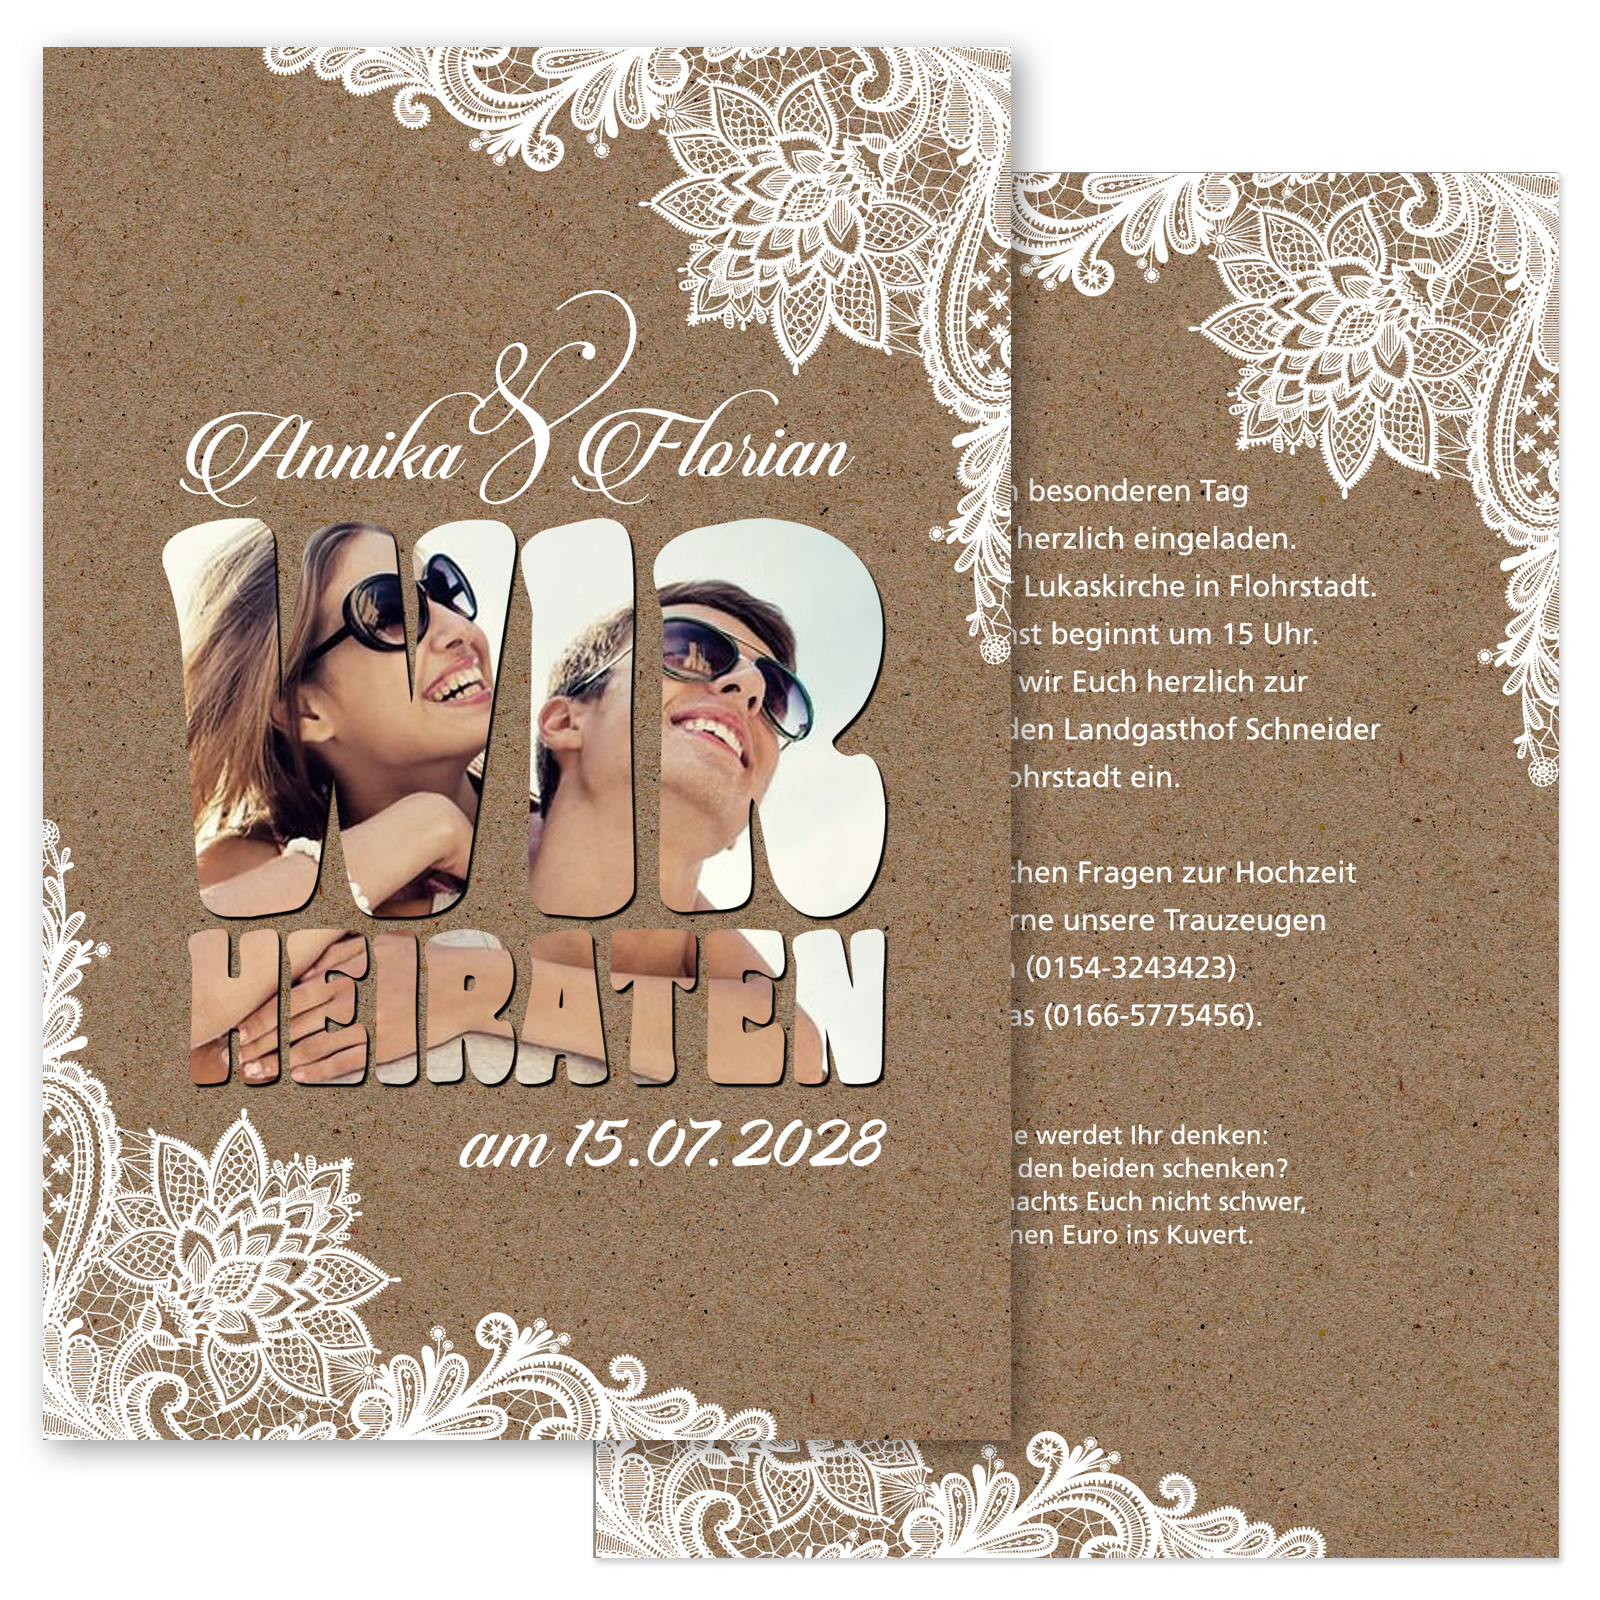 20 x Grußkarte Geburtstag Einladungskarte Hochzeit Hochzeitseinladungskarten